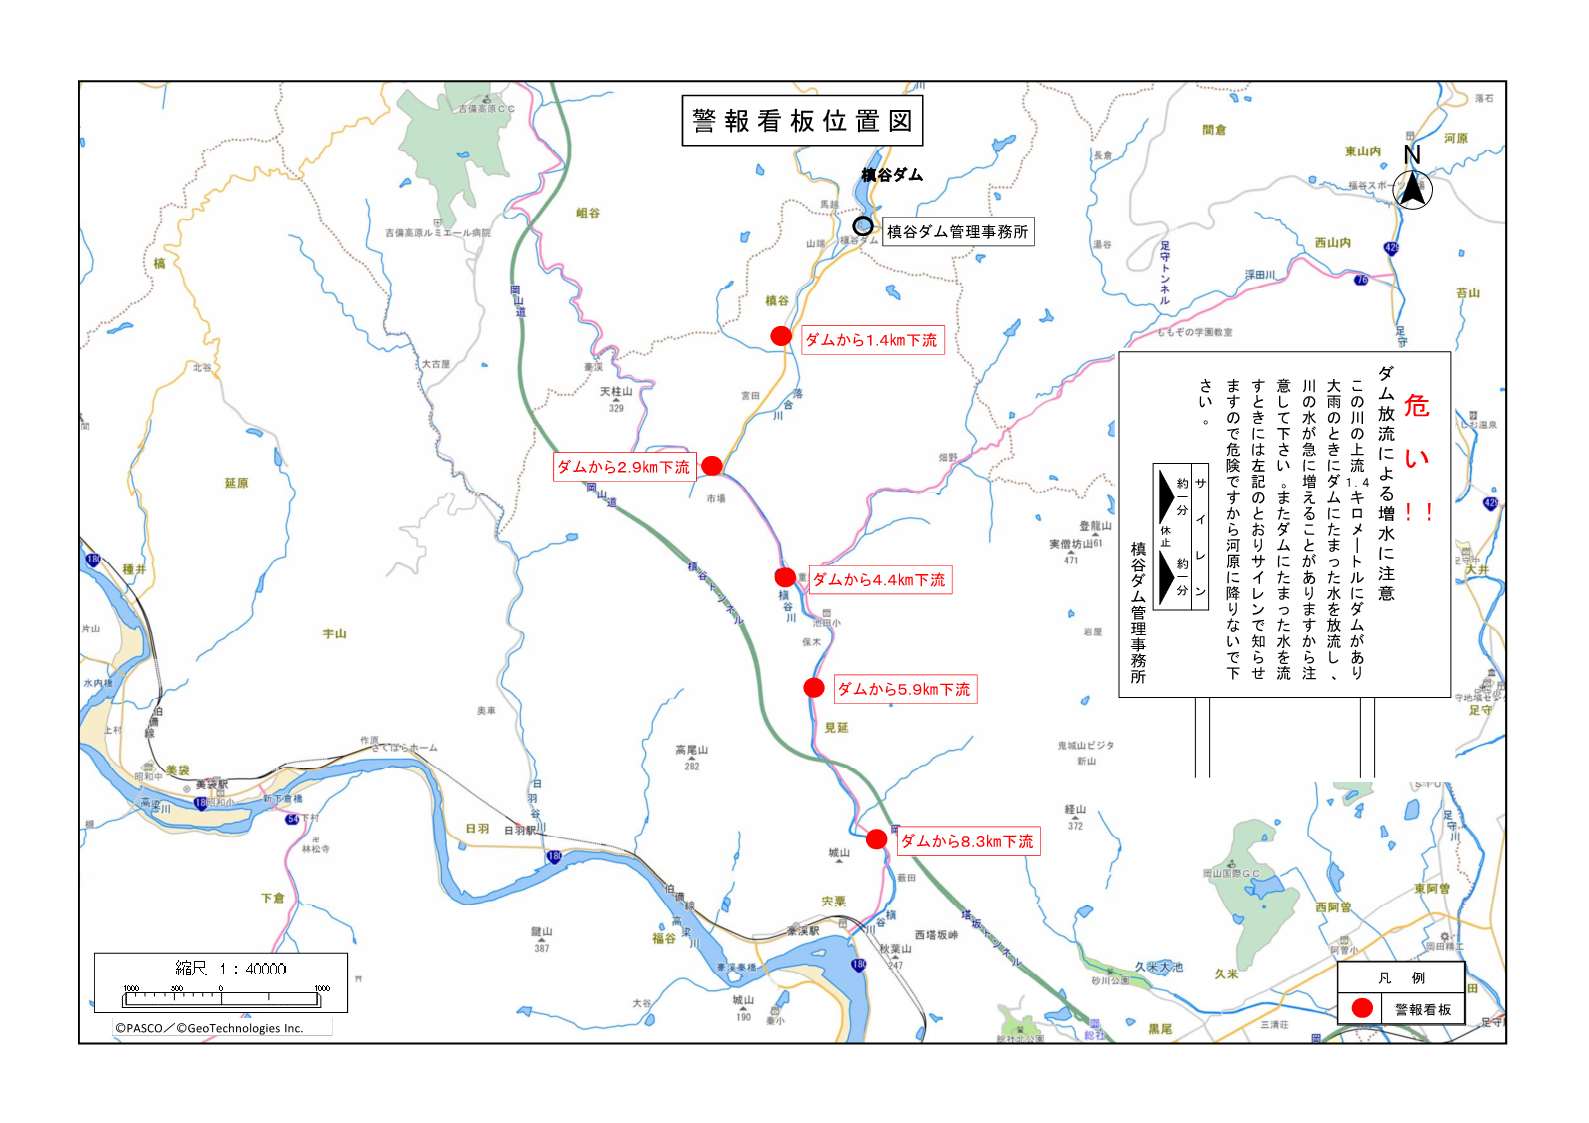 警報看板に記載している内容の一例と槙谷ダムの場所と警報看板の設置位置（5箇所）を記した地図です。